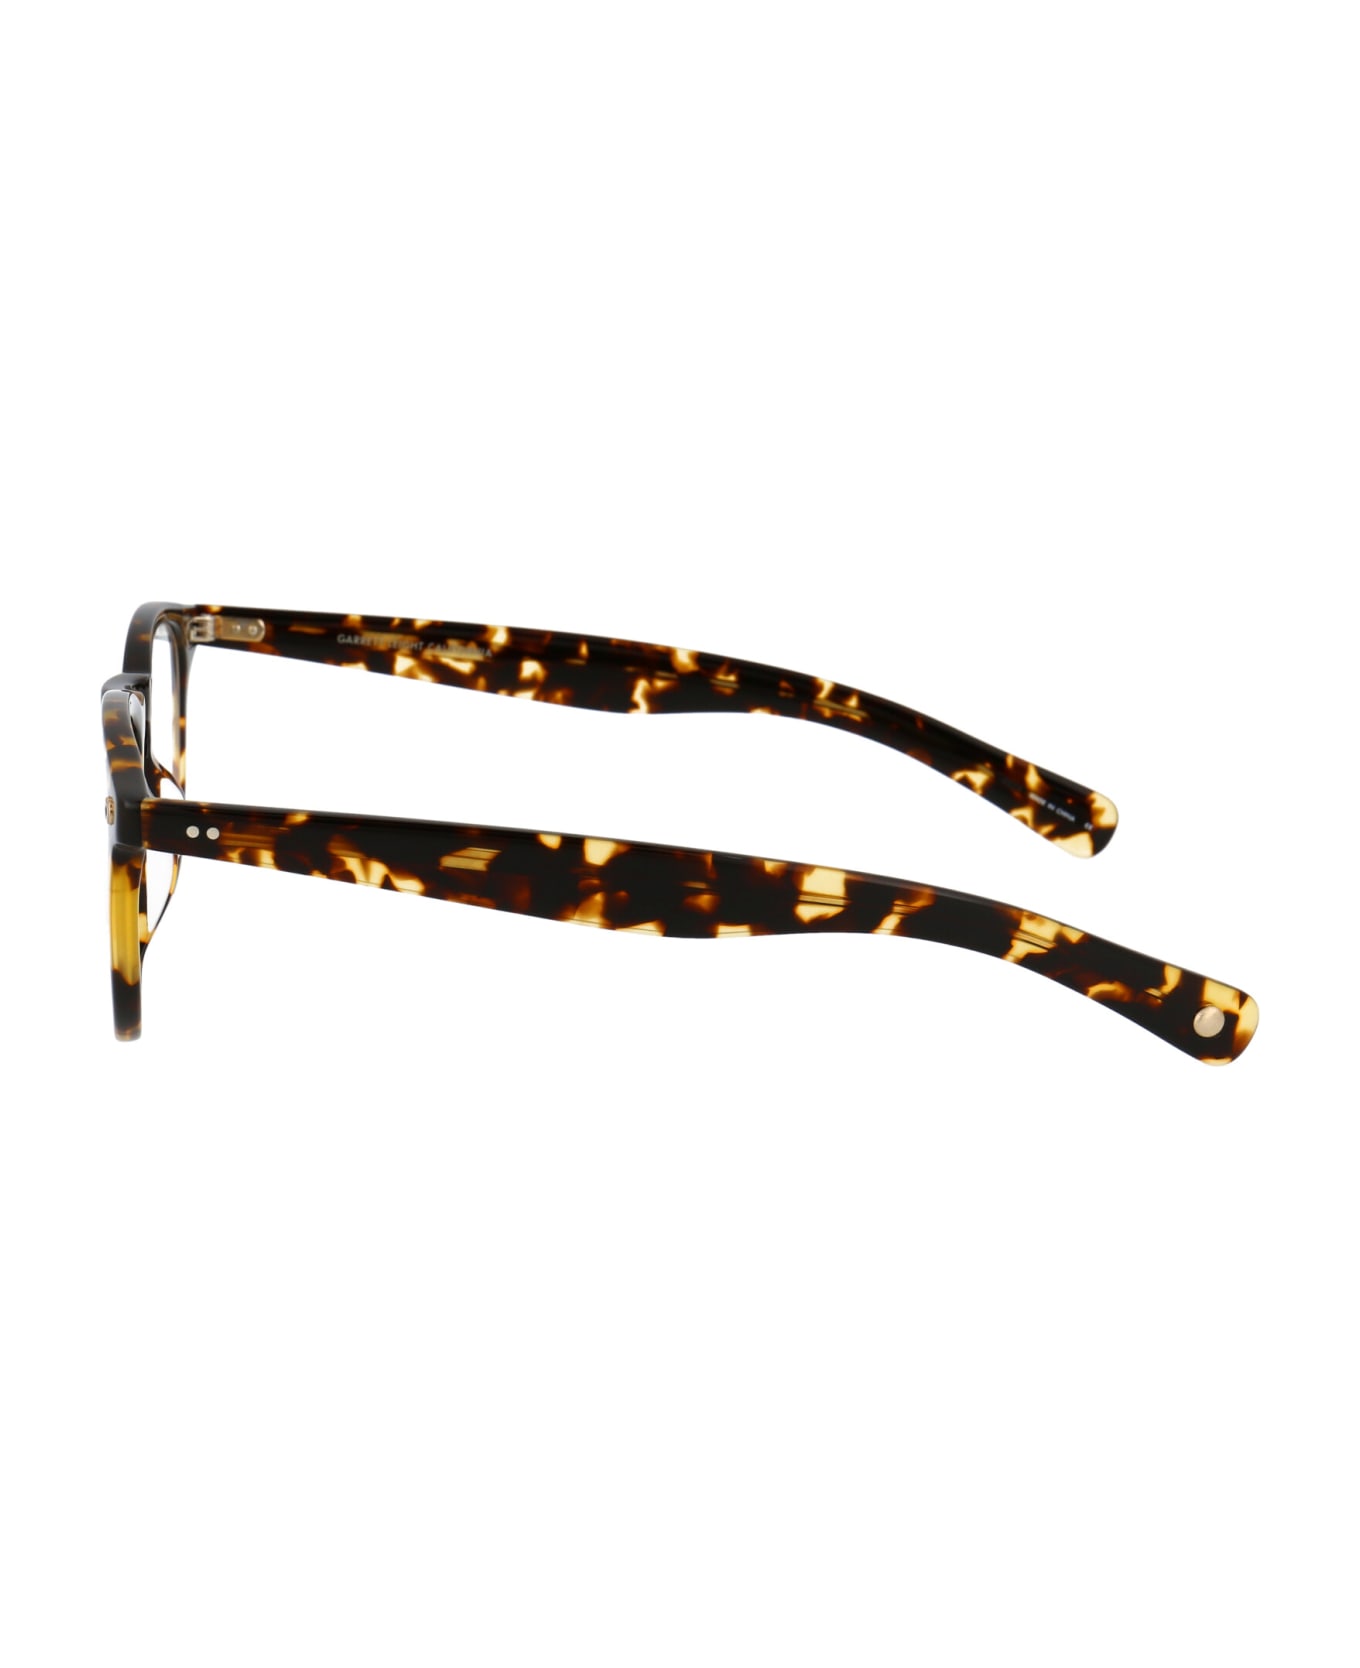 Garrett Leight Hampton X 44 Glasses - TUSCAN TORTOISE アイウェア